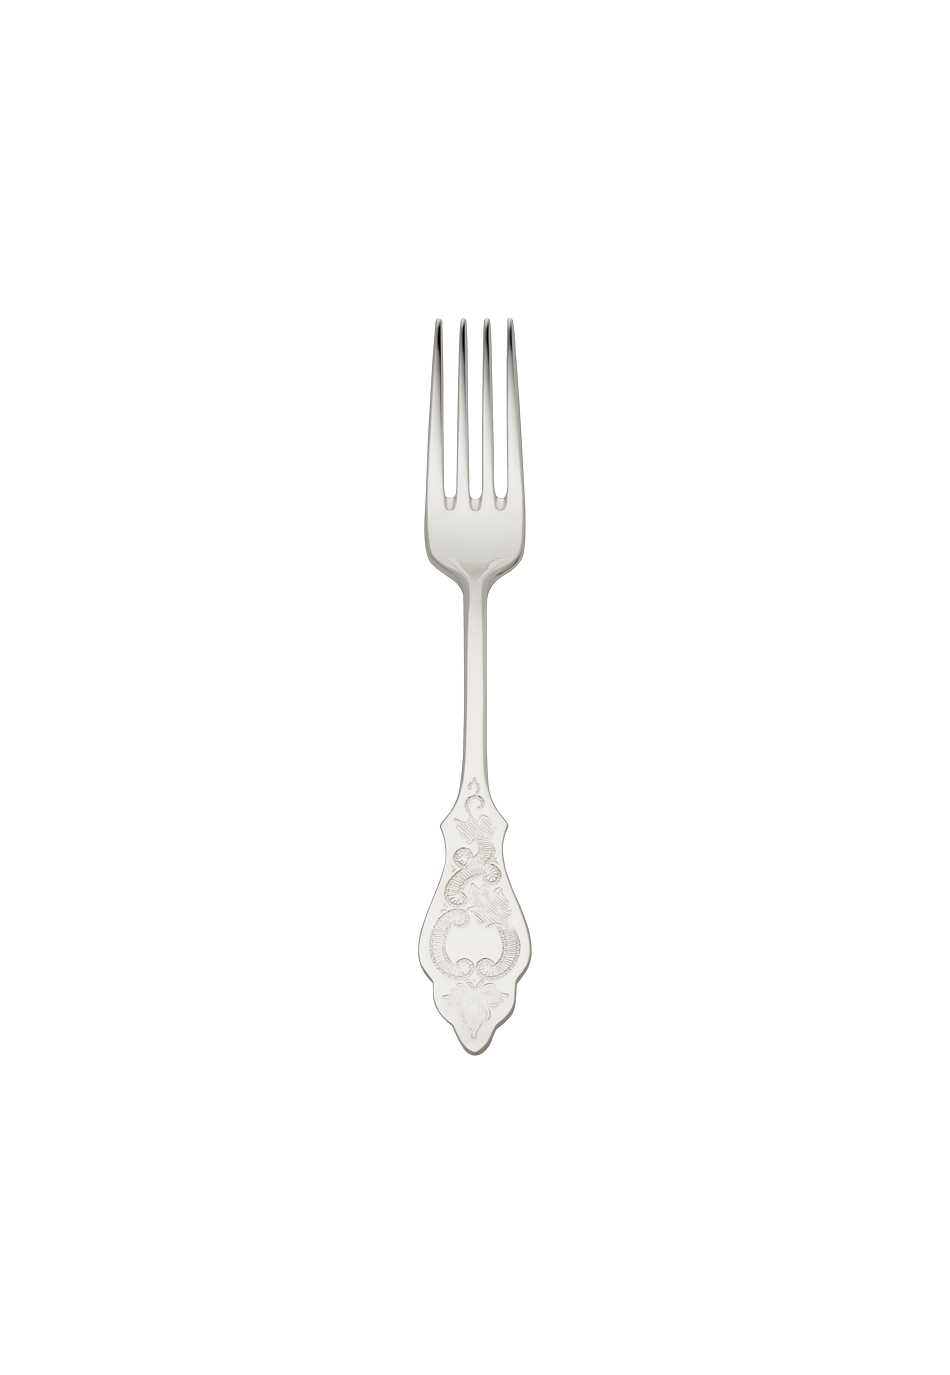 Ostfriesen Children's Fork (18/8 stainless steel)